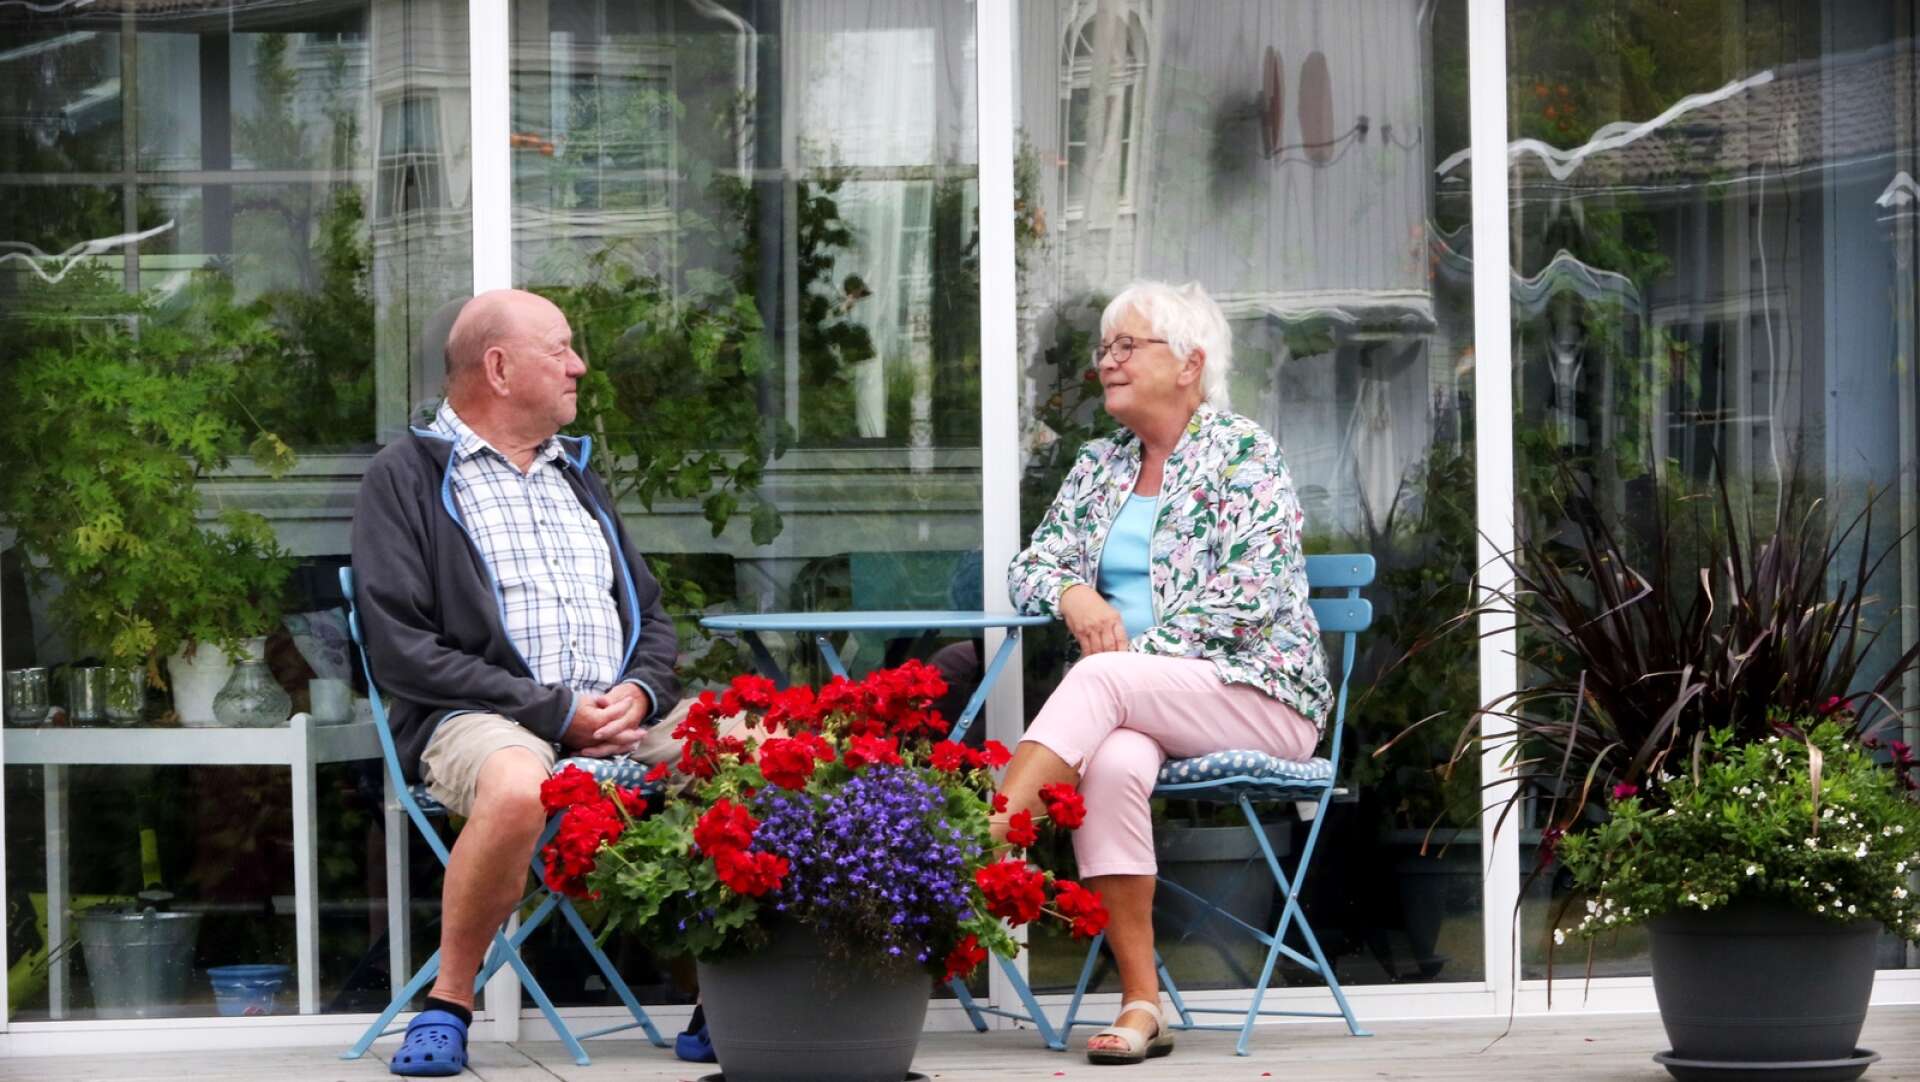 Bengt och Sylvia Johanssons trädgård med inglasad altan är en av många gröna oaser i bostadsområdet Västra skogen. Den sociala gemenskapen är något som paret uppskattar.